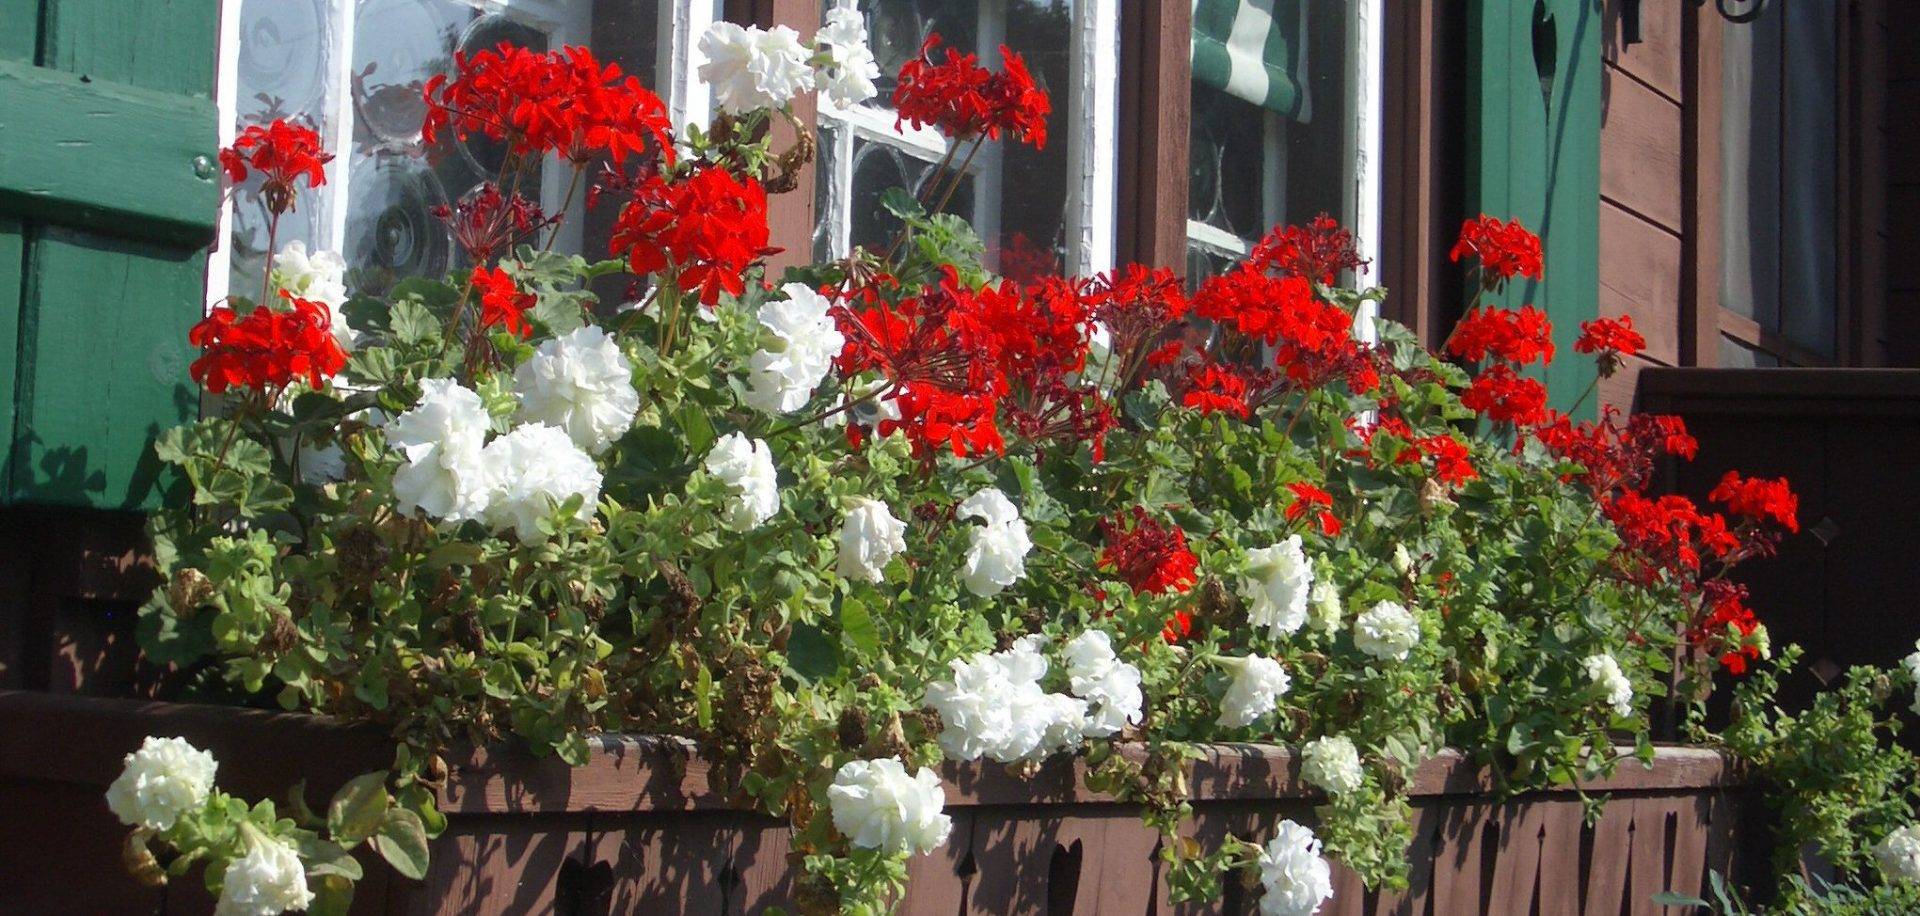 Flowers in a window planter